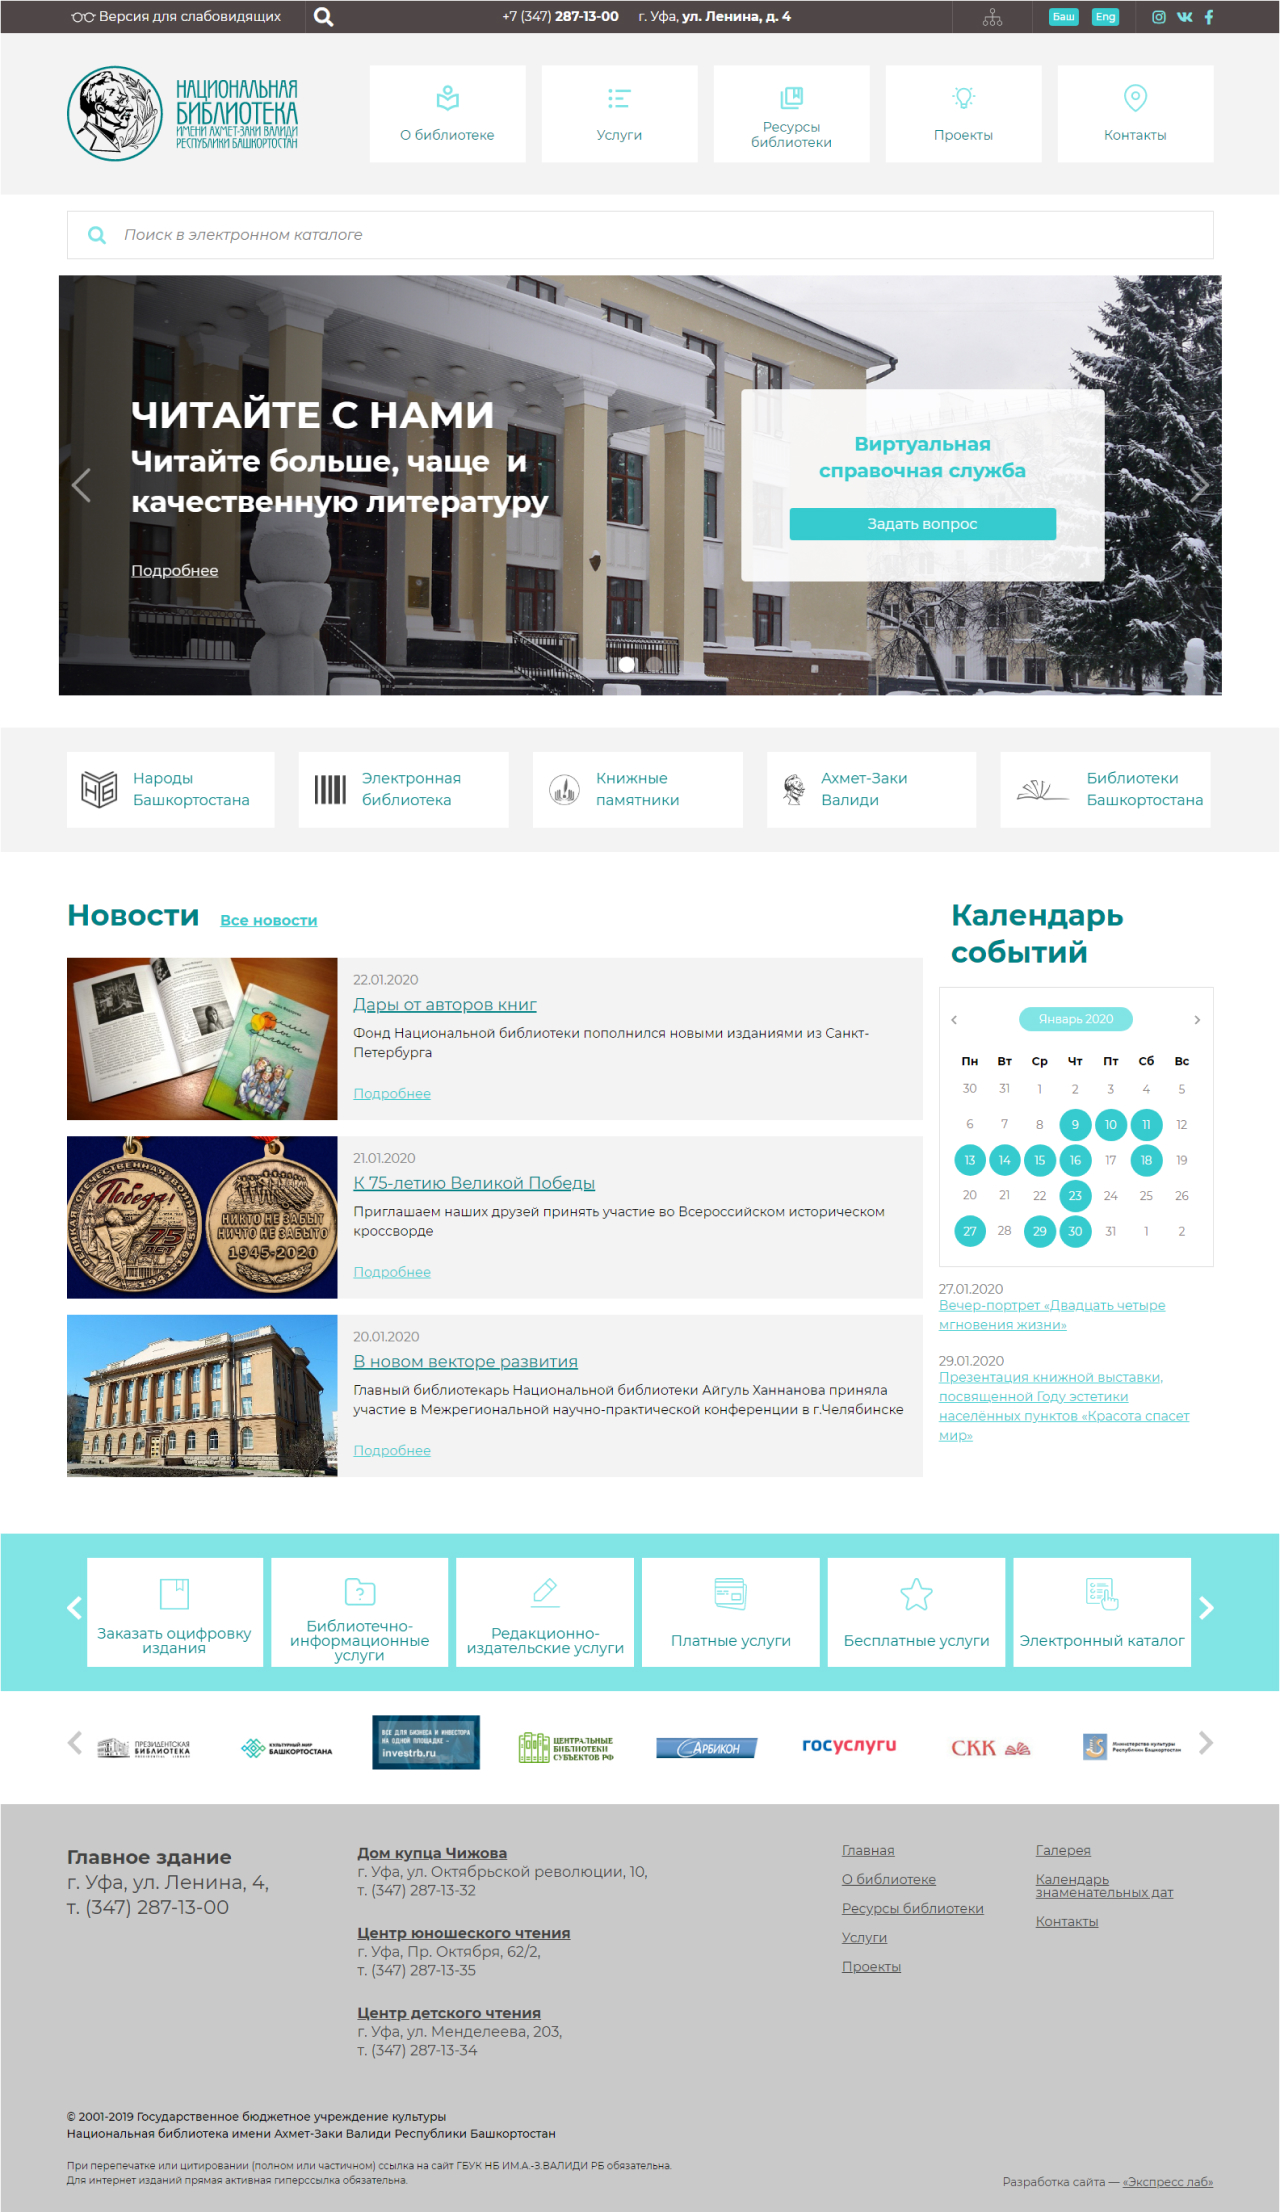 Создание корпоративного сайта Национальная библиотека имени Ахмет-Заки Валиди РБ